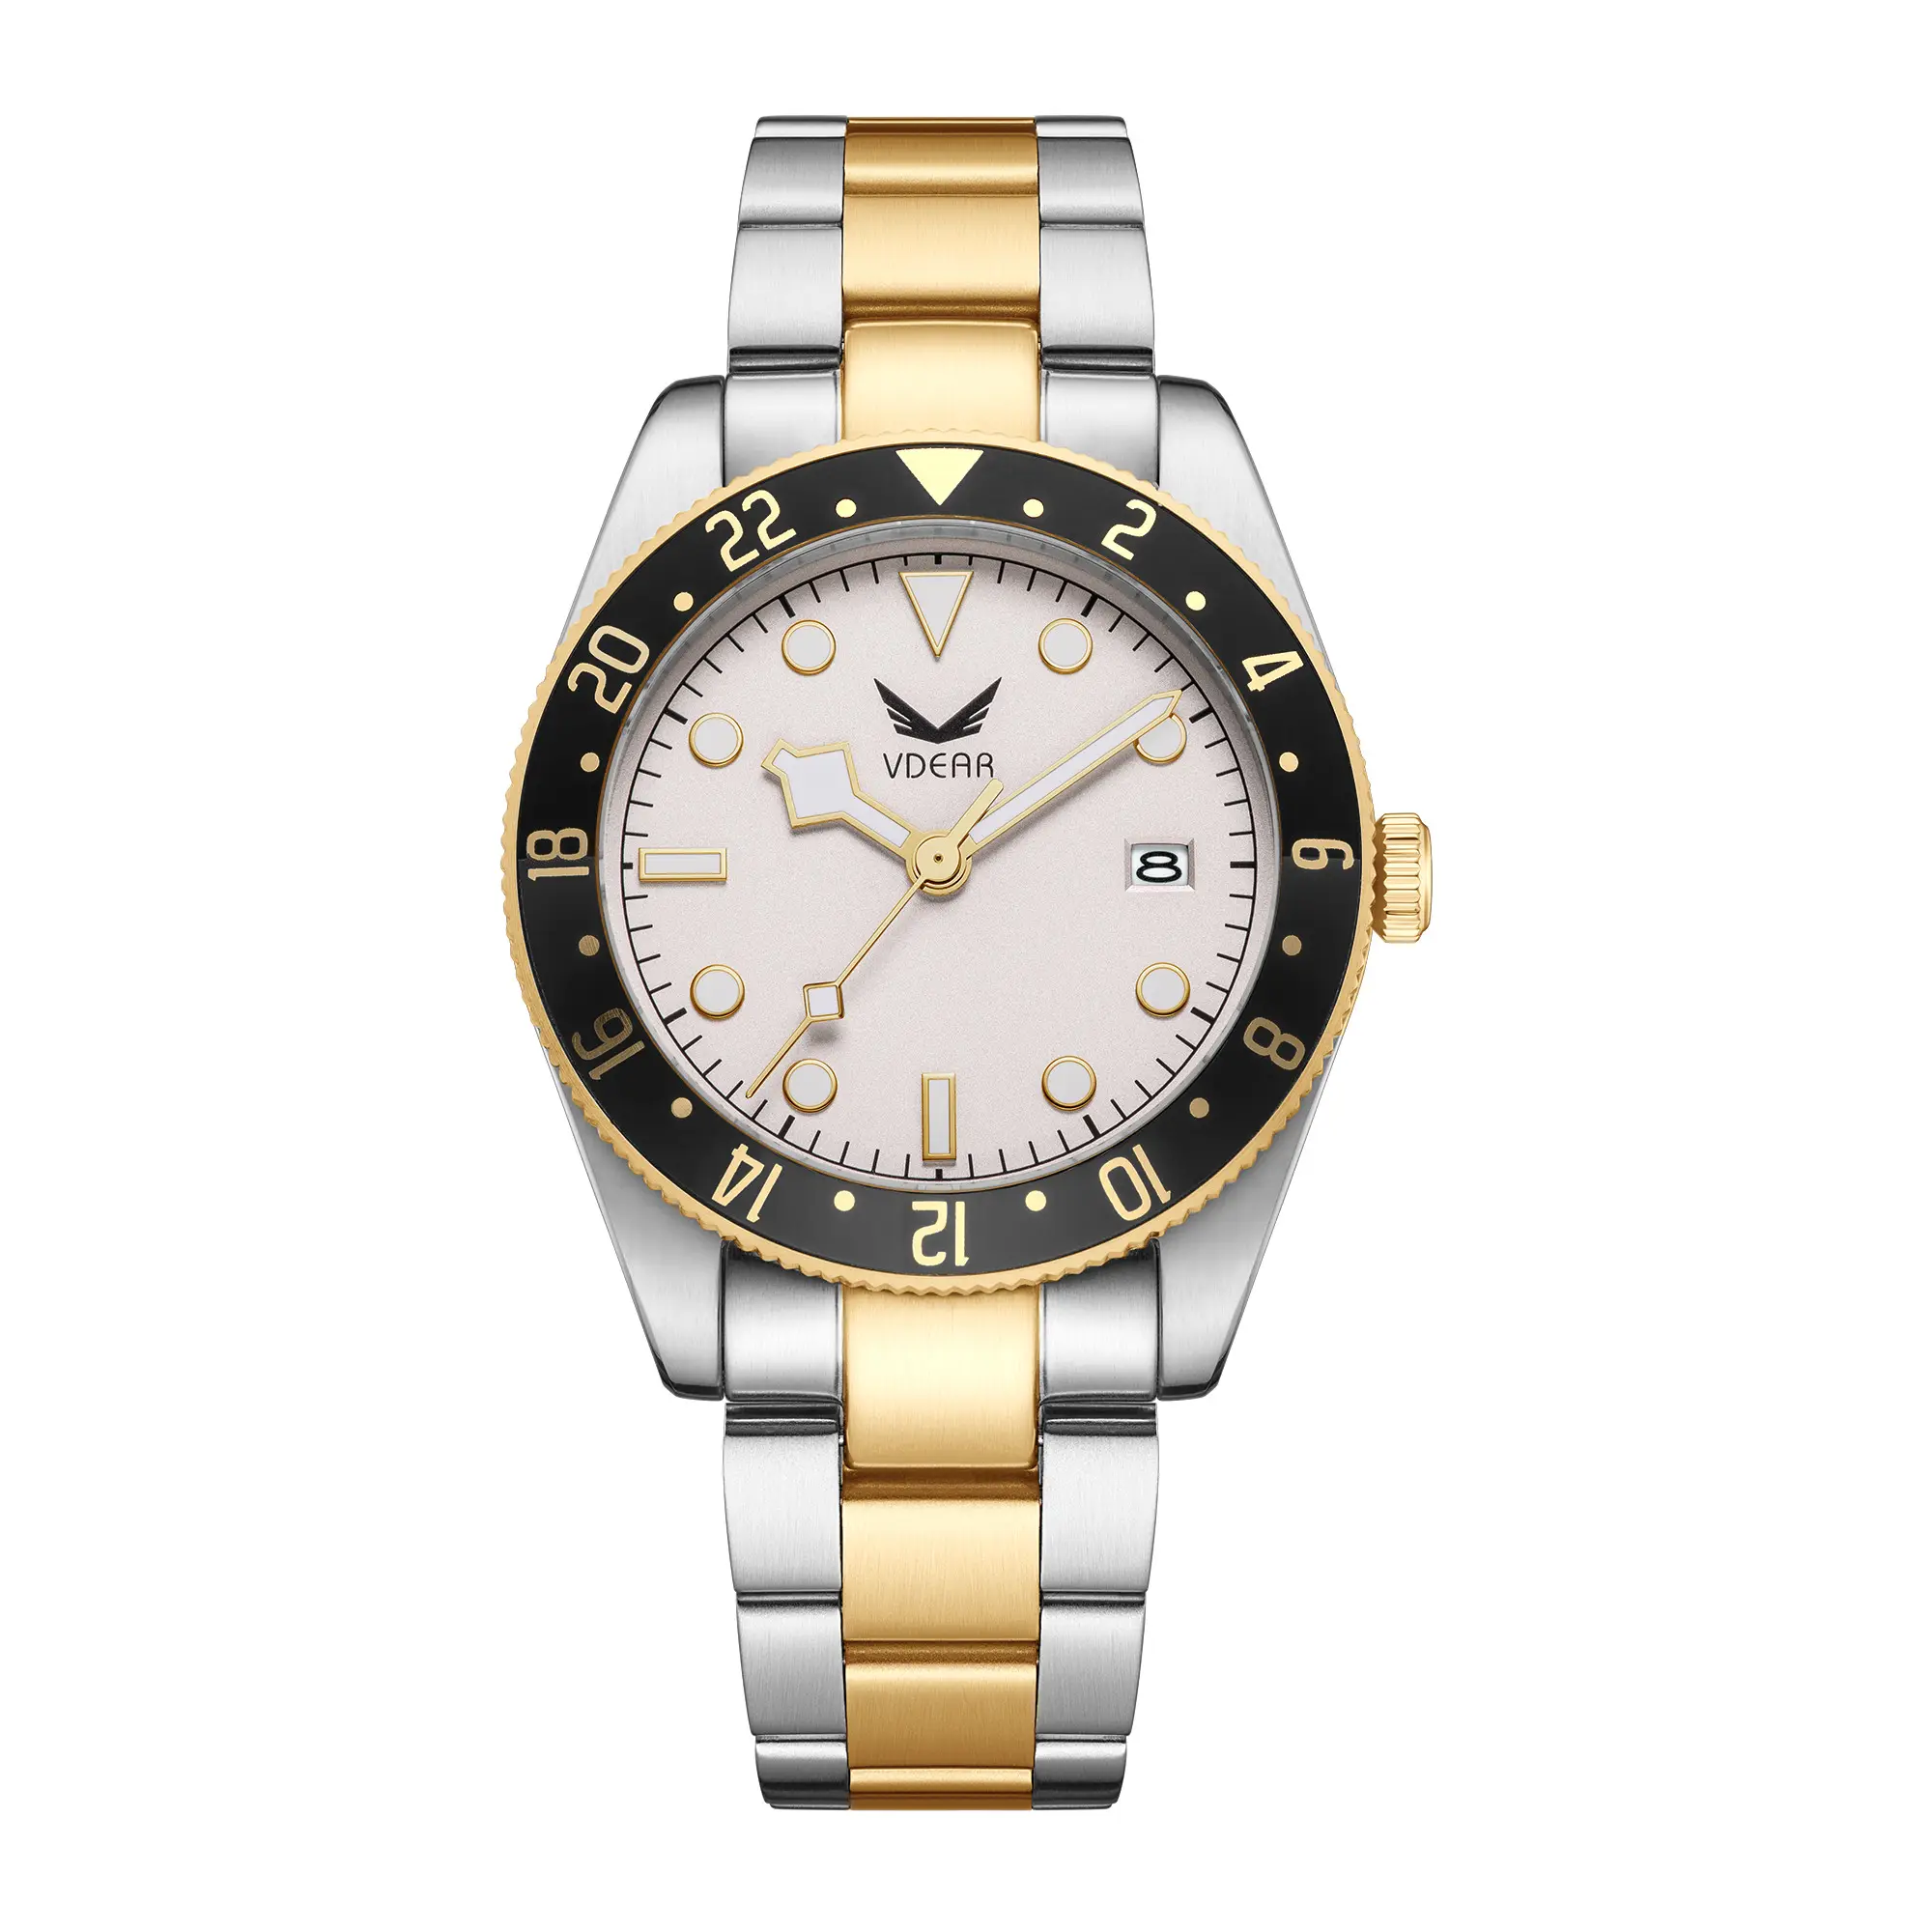 Oem jam tangan bercahaya Vintage pria, dengan tanggal kalender Montres Acier jam tangan kuarsa mewah dapat disesuaikan